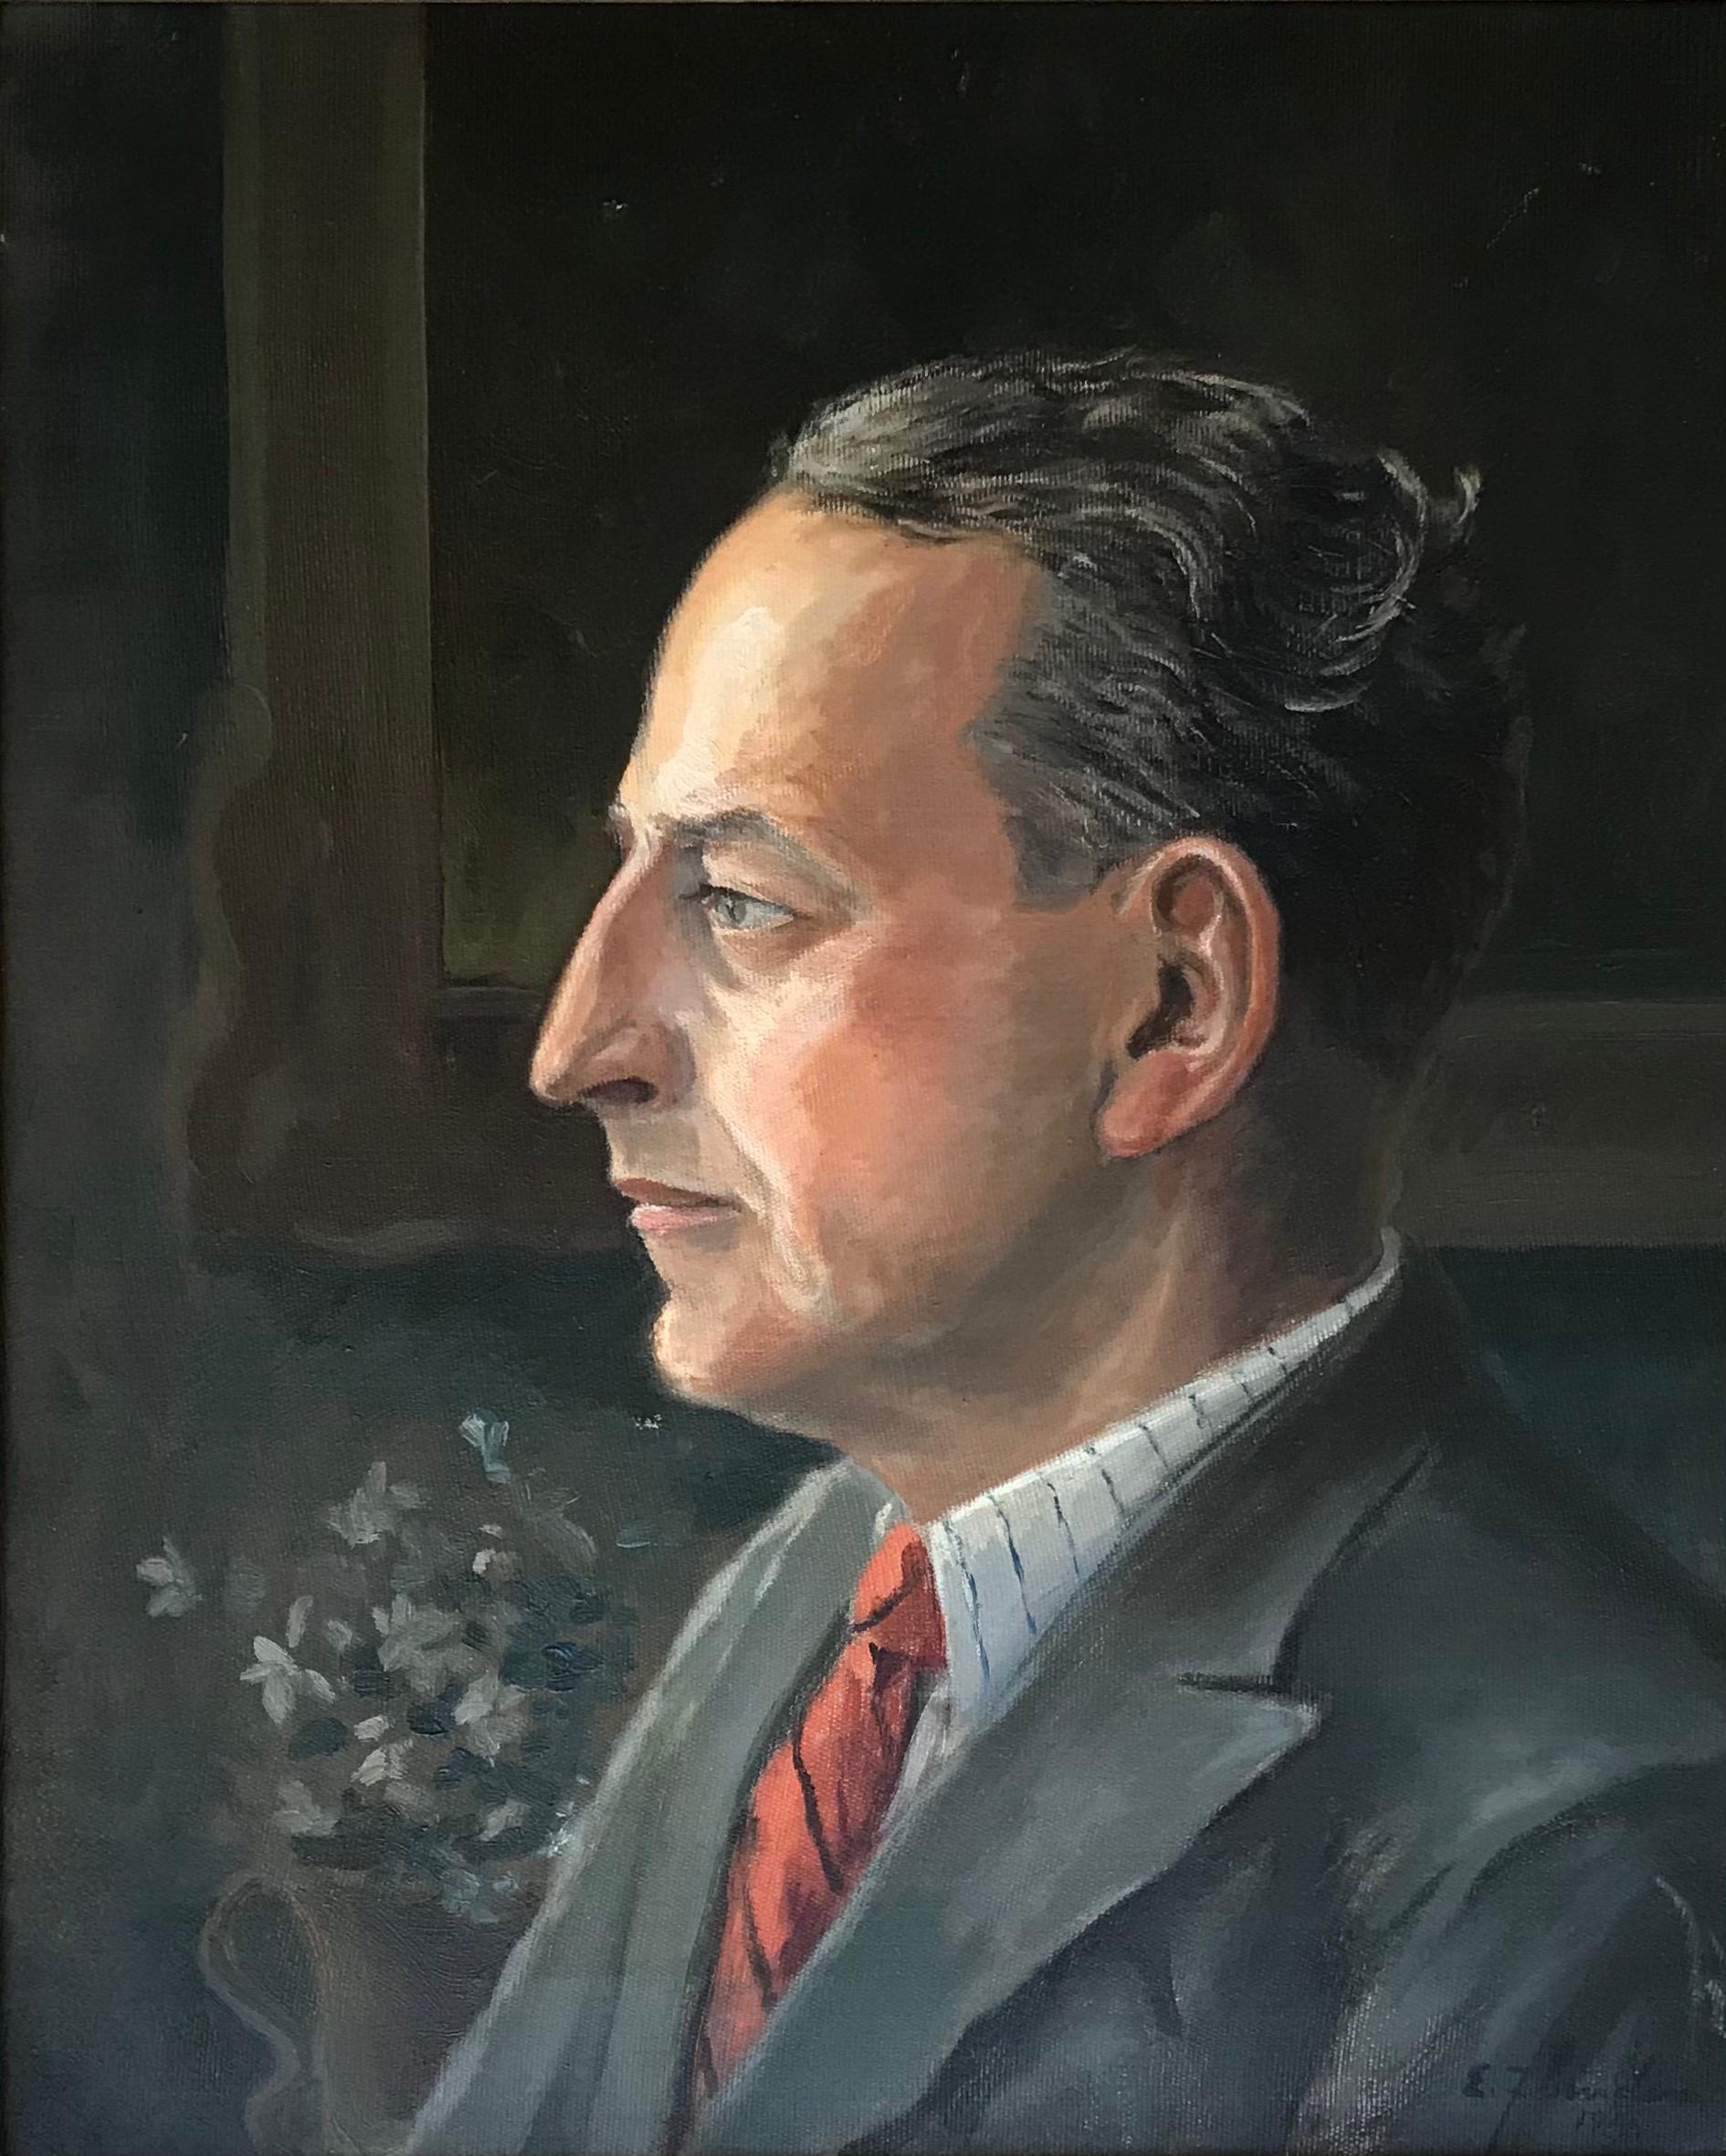 Emil Zbinden Portrait Painting - Portrait of man in suit